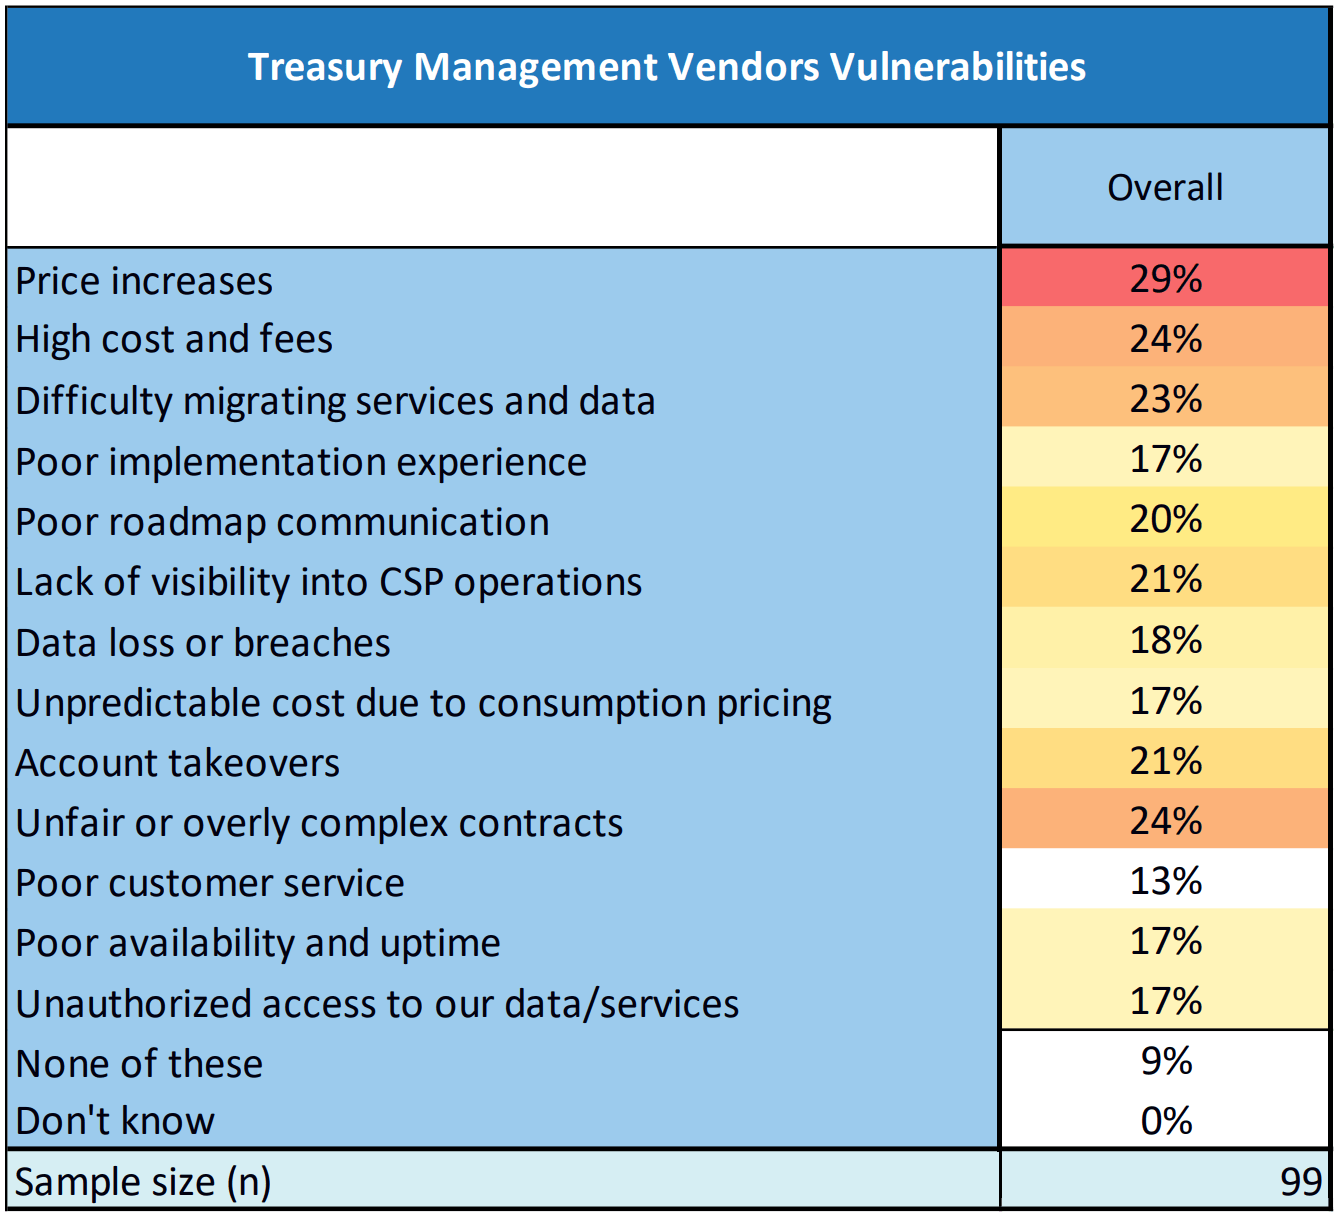 Treasury Management Vendors Vulnerabilities graphic